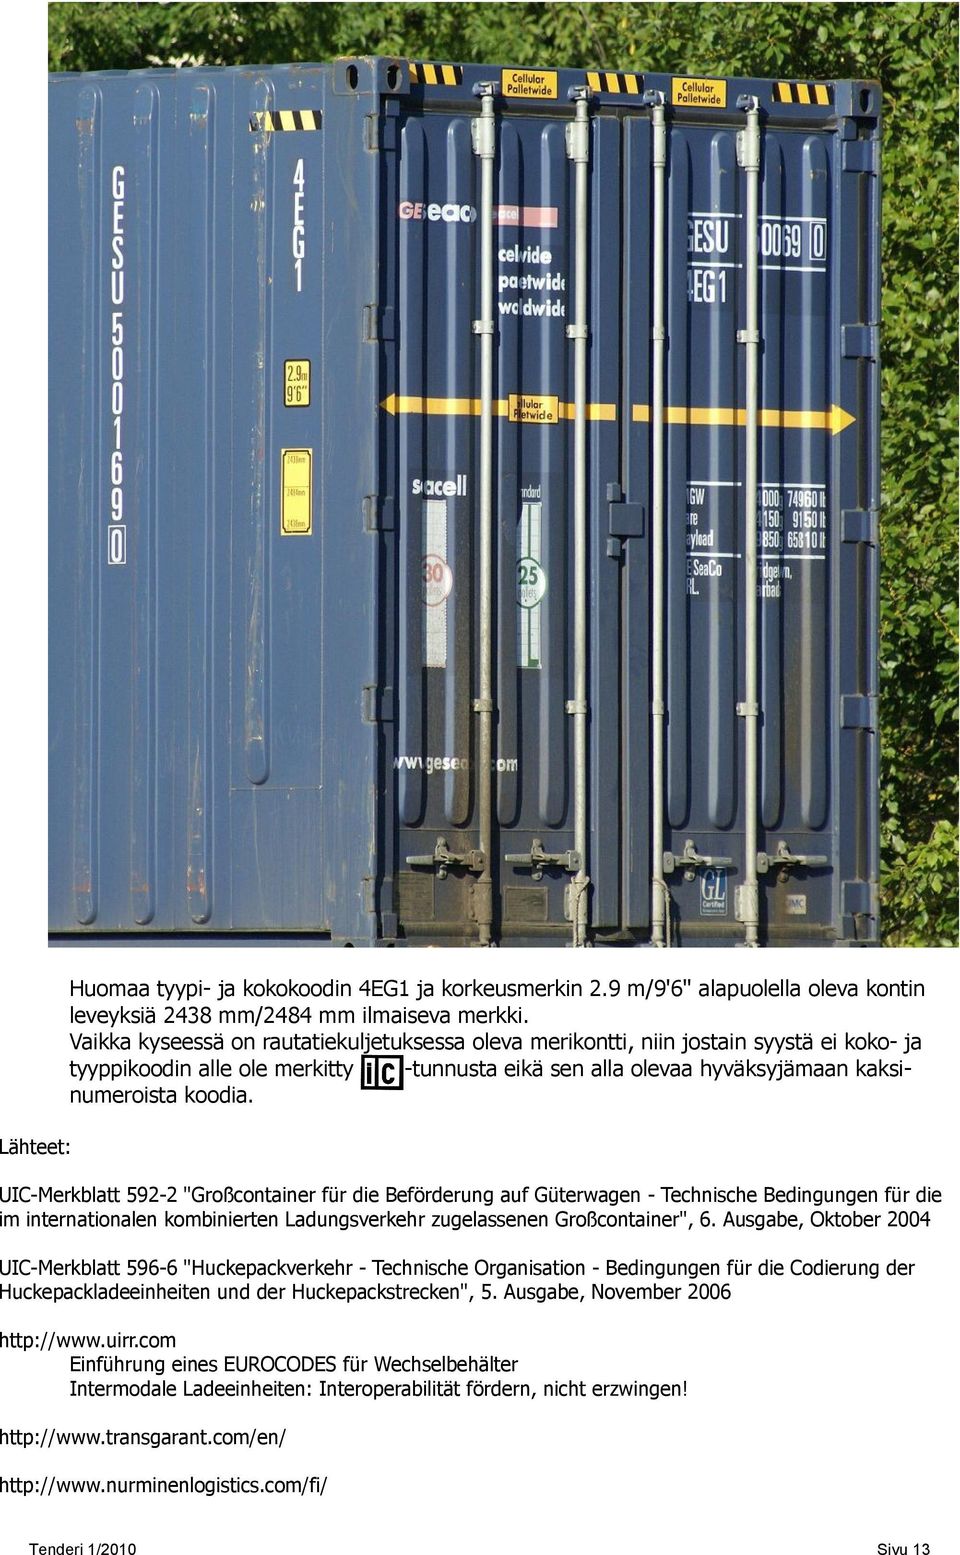 UIC-Merkblatt 592-2 "Großcontainer für die Beförderung auf Güterwagen - Technische Bedingungen für die im internationalen kombinierten Ladungsverkehr zugelassenen Großcontainer", 6.